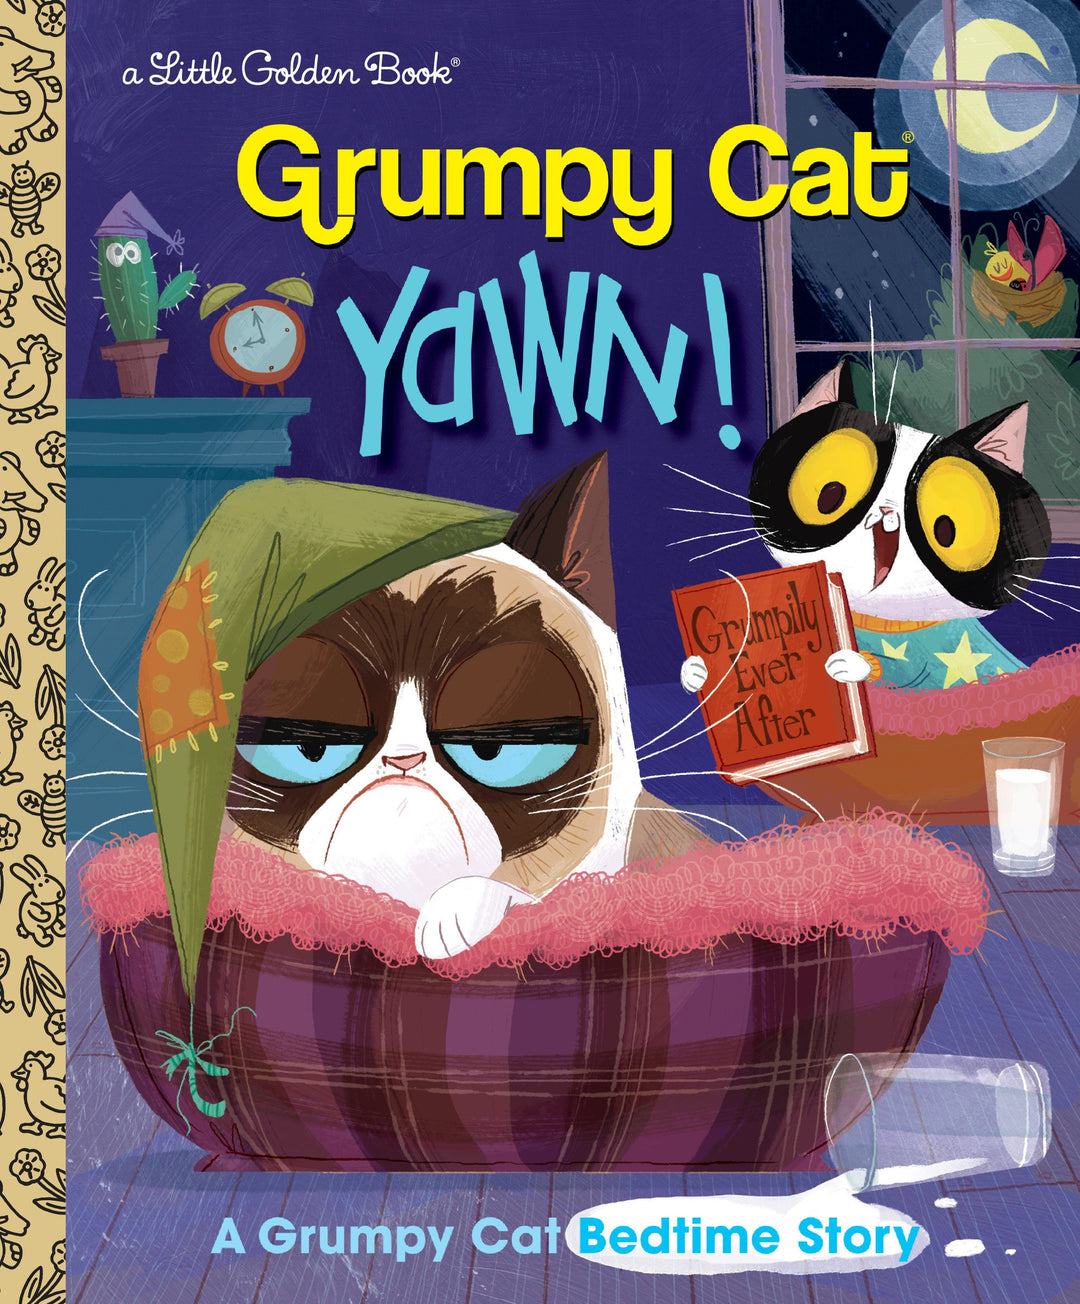 Yawn! A Grumpy Cat Bedtime Story Little Golden Book